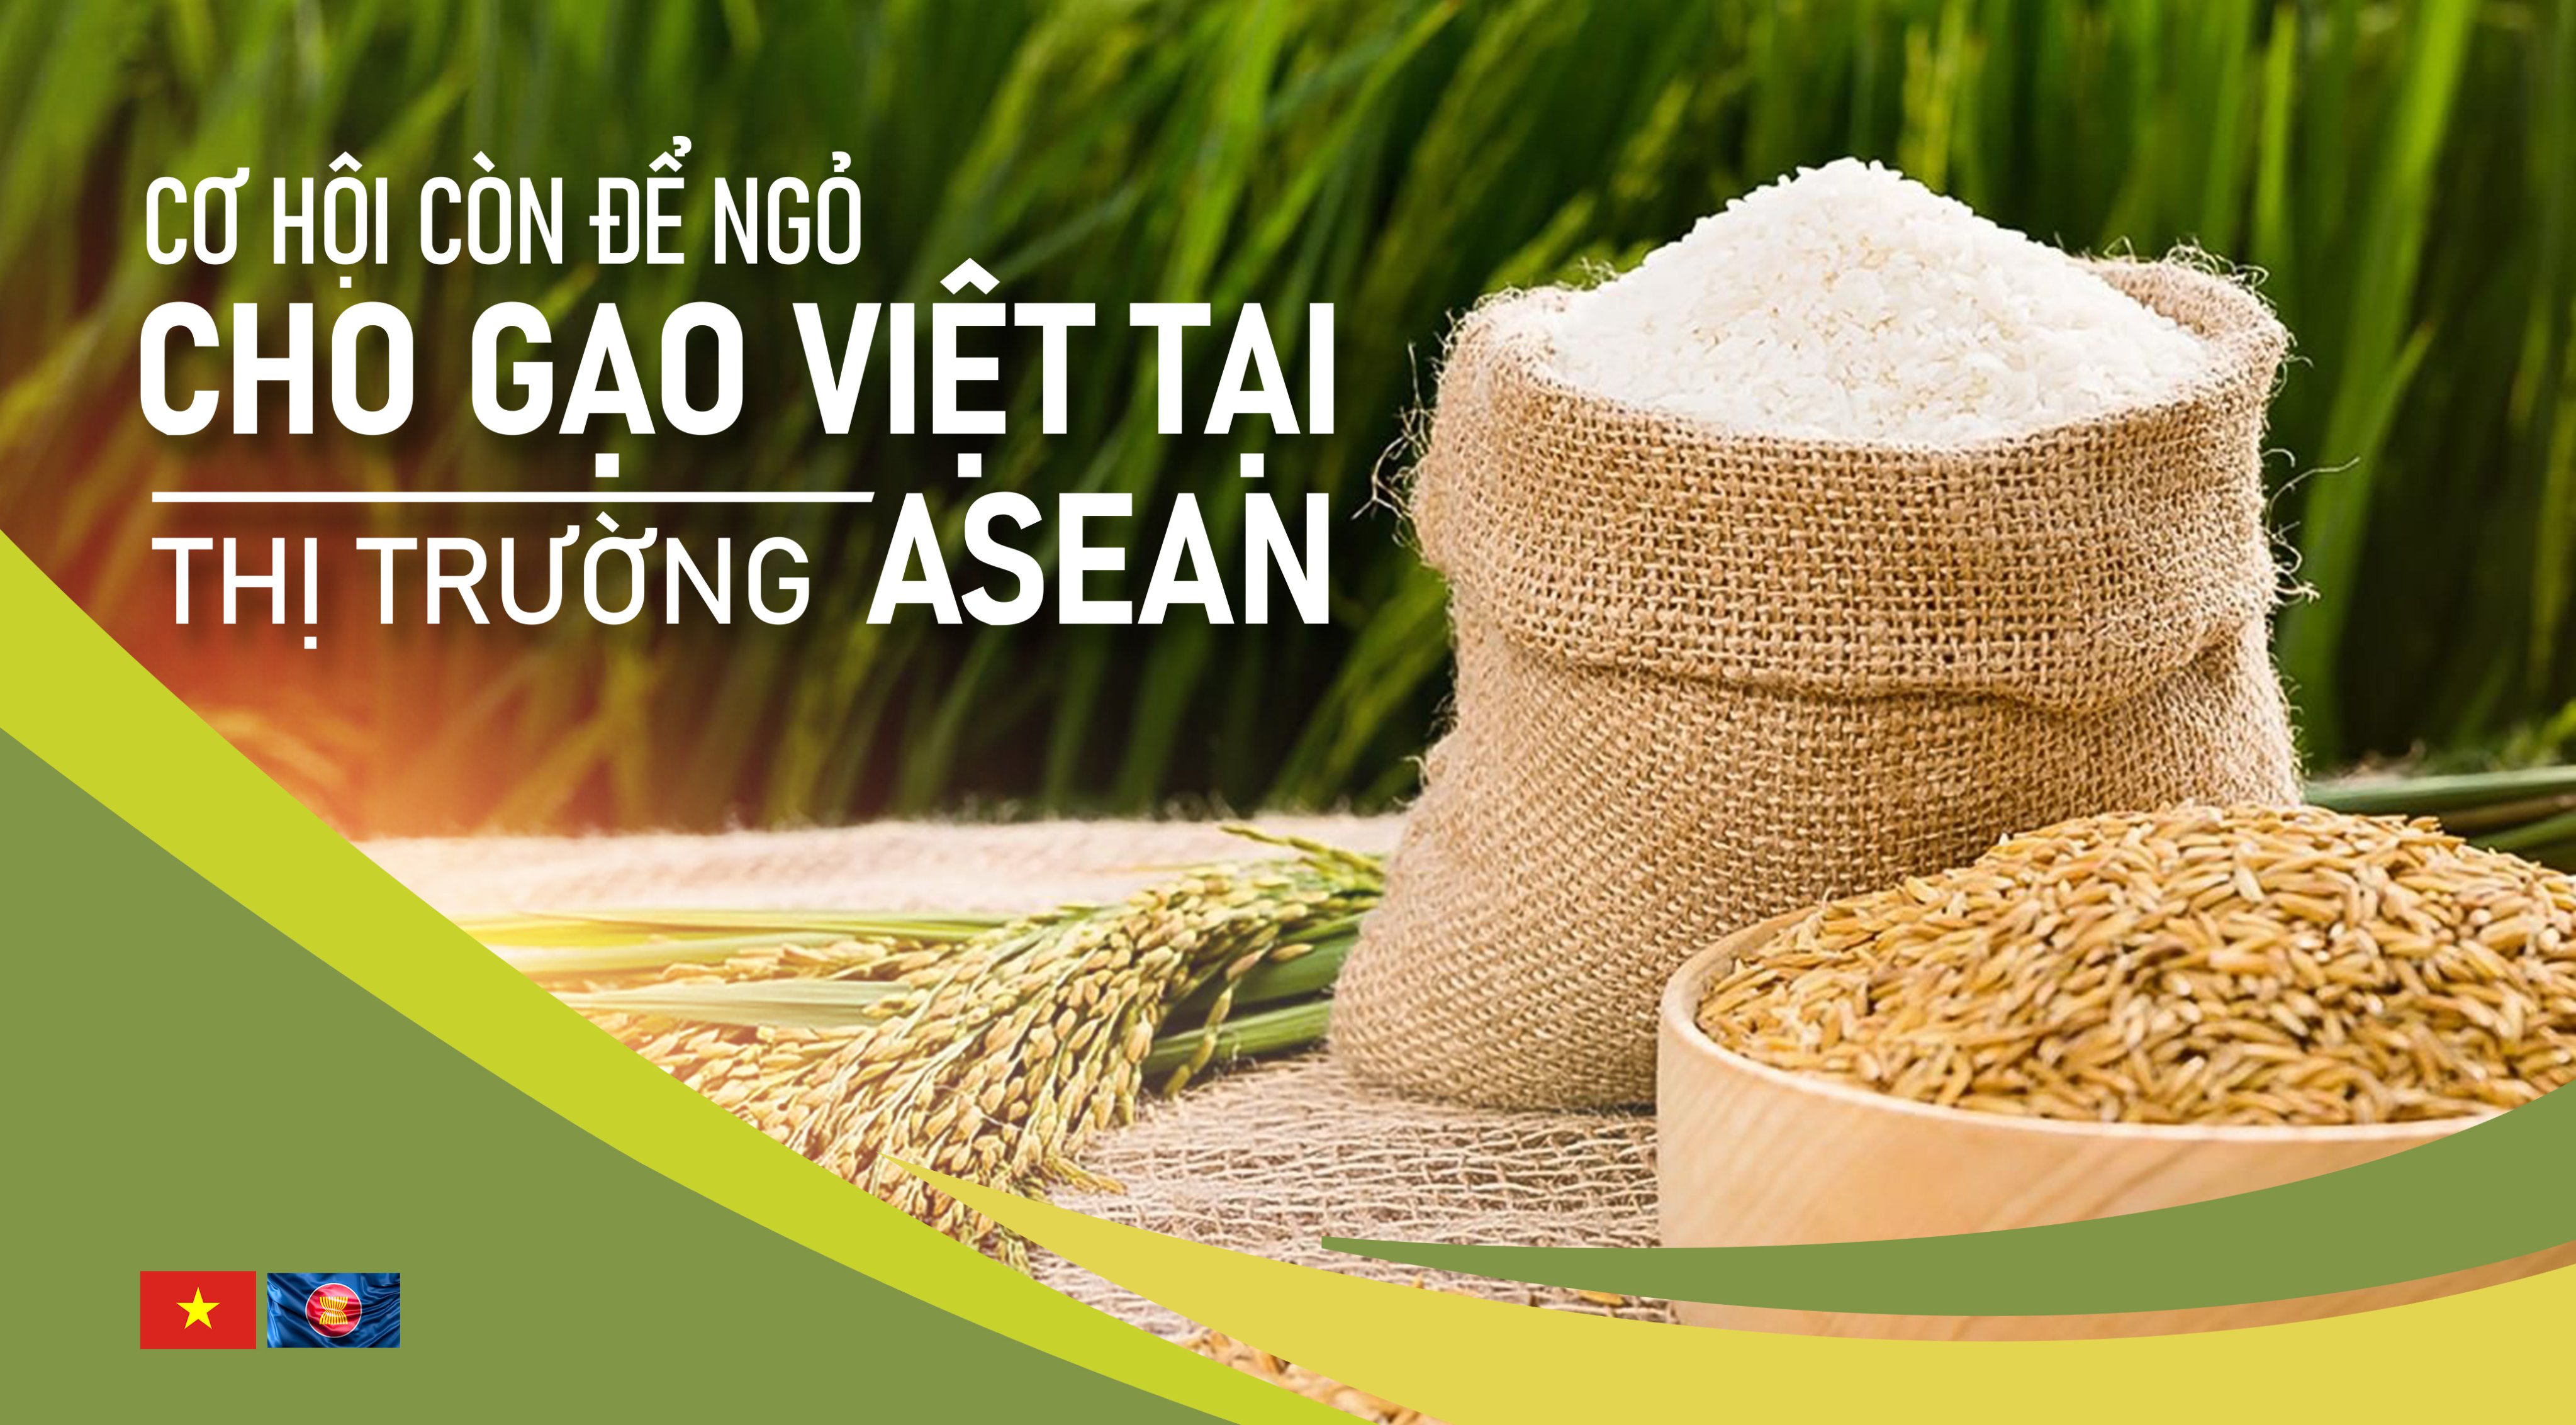 Cơ hội còn để ngỏ cho gạo Việt tại thị trường ASEAN